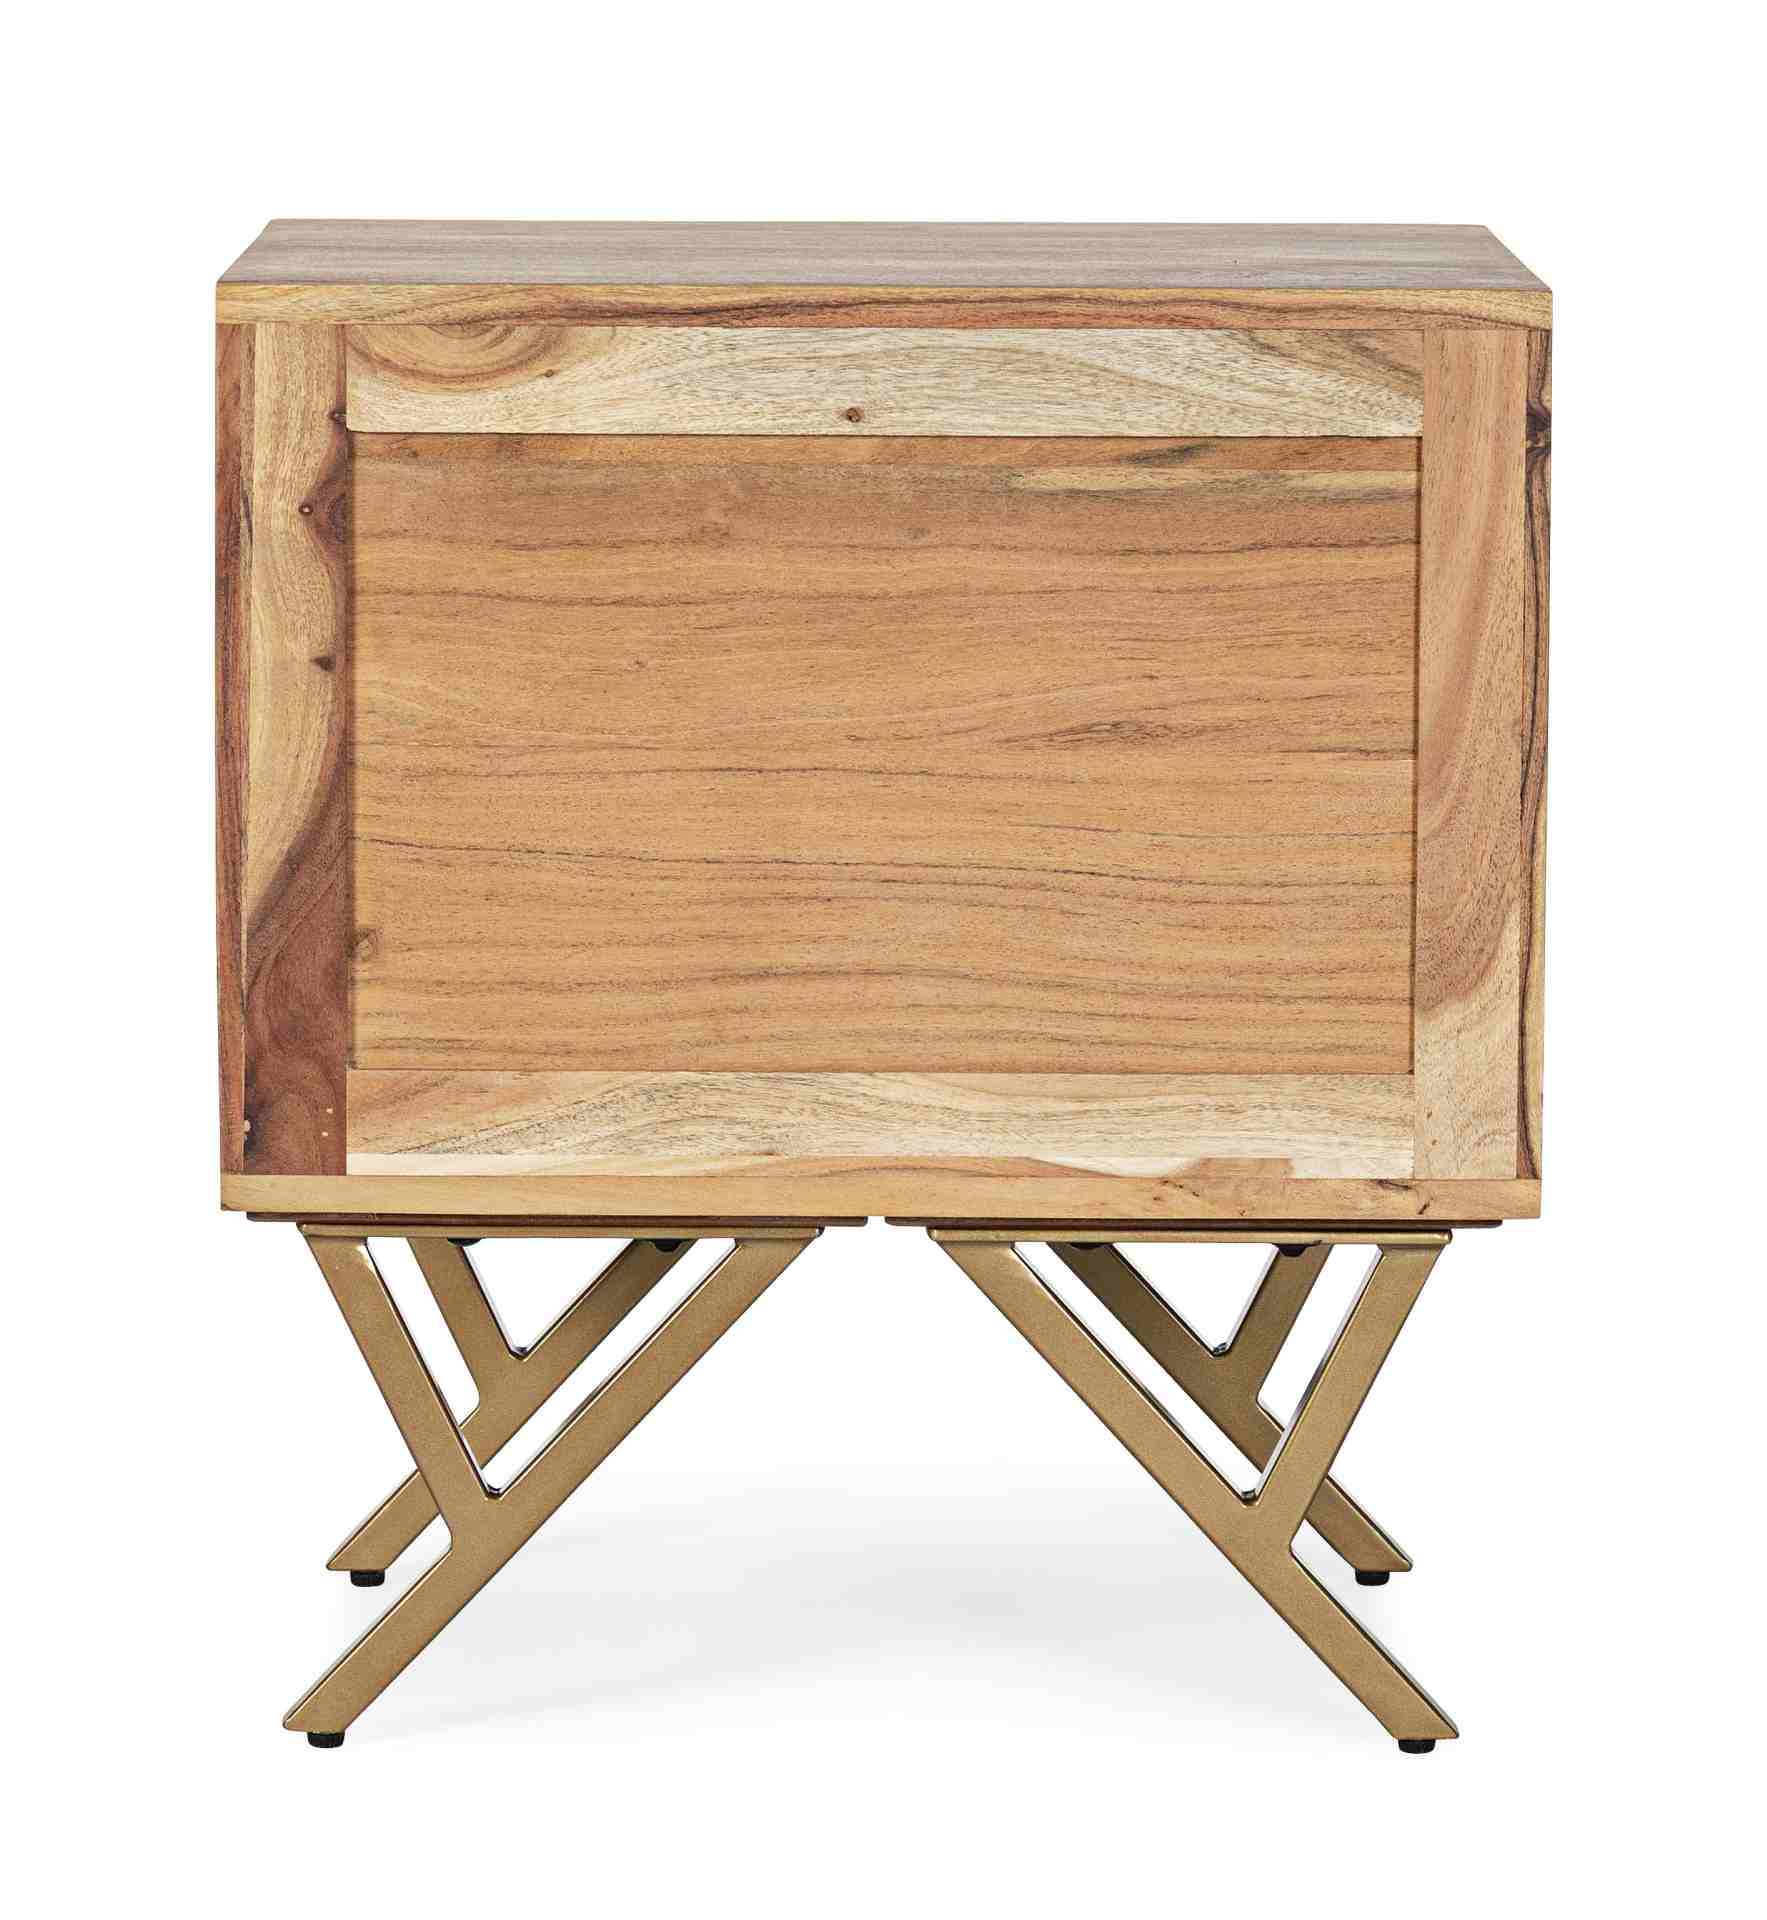 Der Nachttisch Raida überzeugt mit seinem modernen Design. Gefertigt wurde er aus Akazienholz, welches einen natürlichen Farbton besitzt. Das Gestell ist aus Metall und hat eine goldene Farbe. Der Nachttisch verfügt über zwei Schubladen. Die Breite beträg